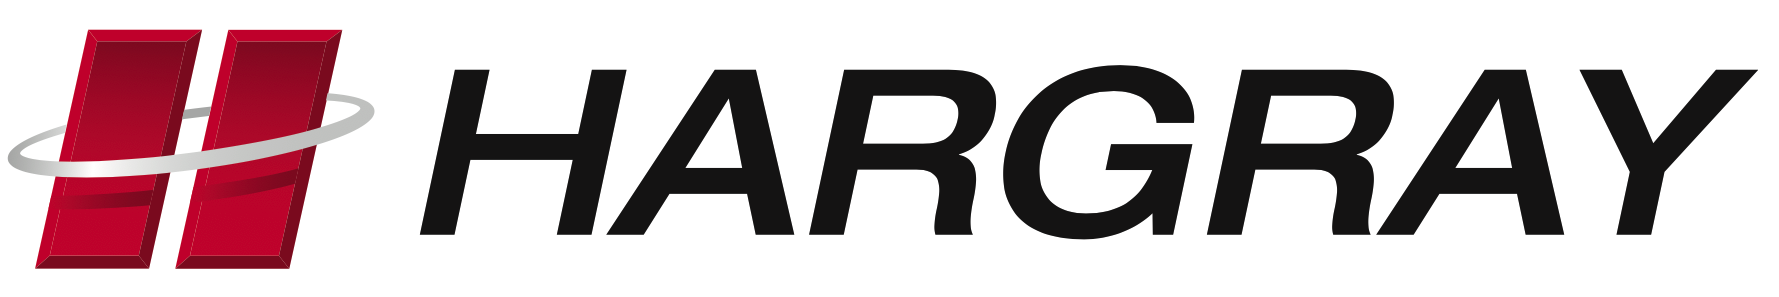 Hargray-Logo